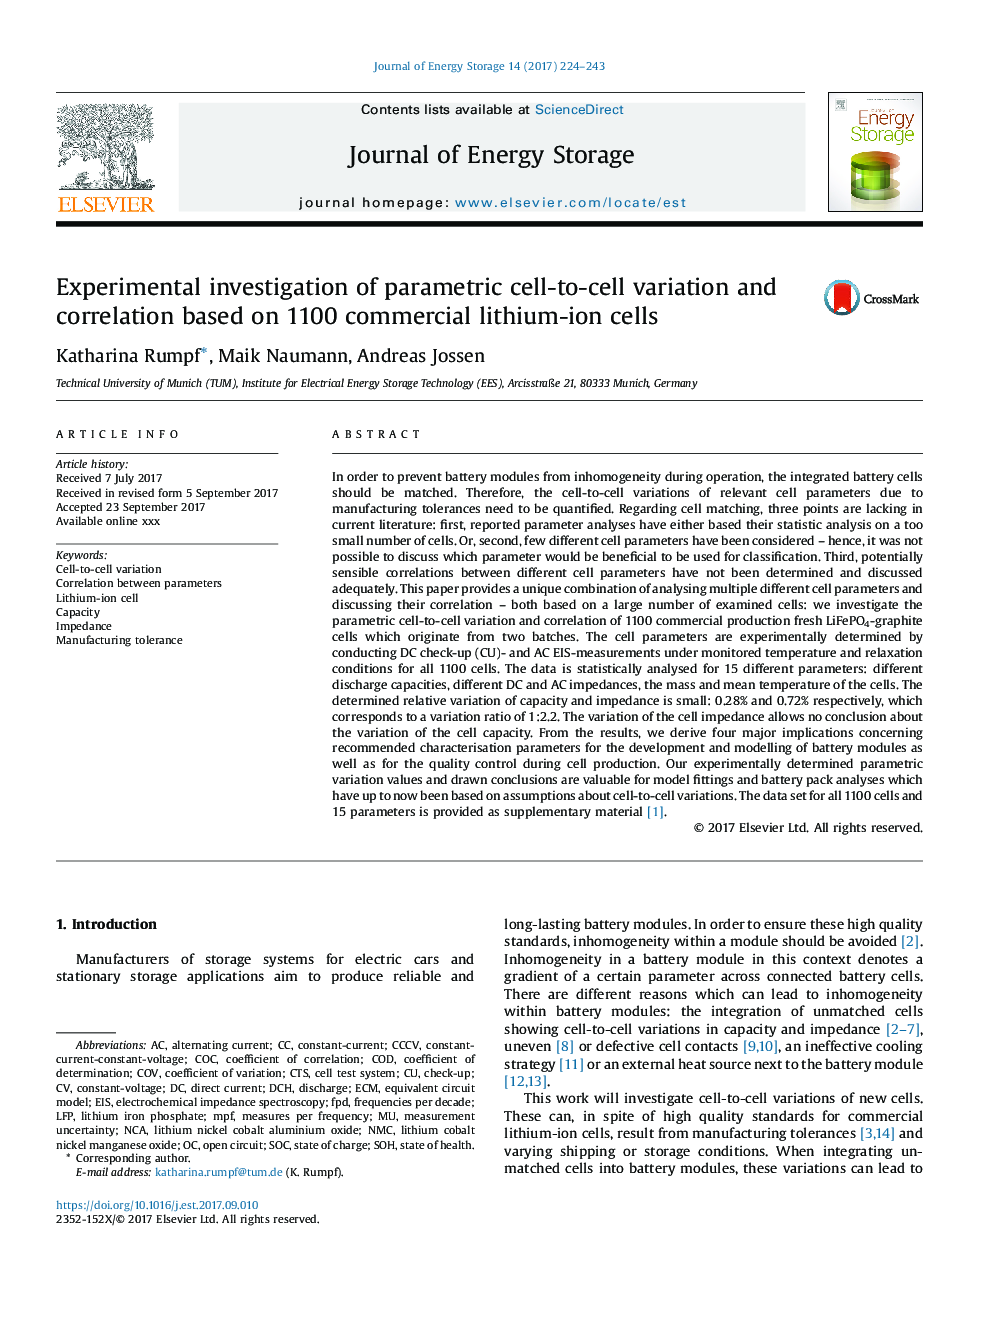 بررسی تجربی از تغییرات پارامتری سلول به سلول و همبستگی بر اساس 1100 سلول های یونی لیتیوم 